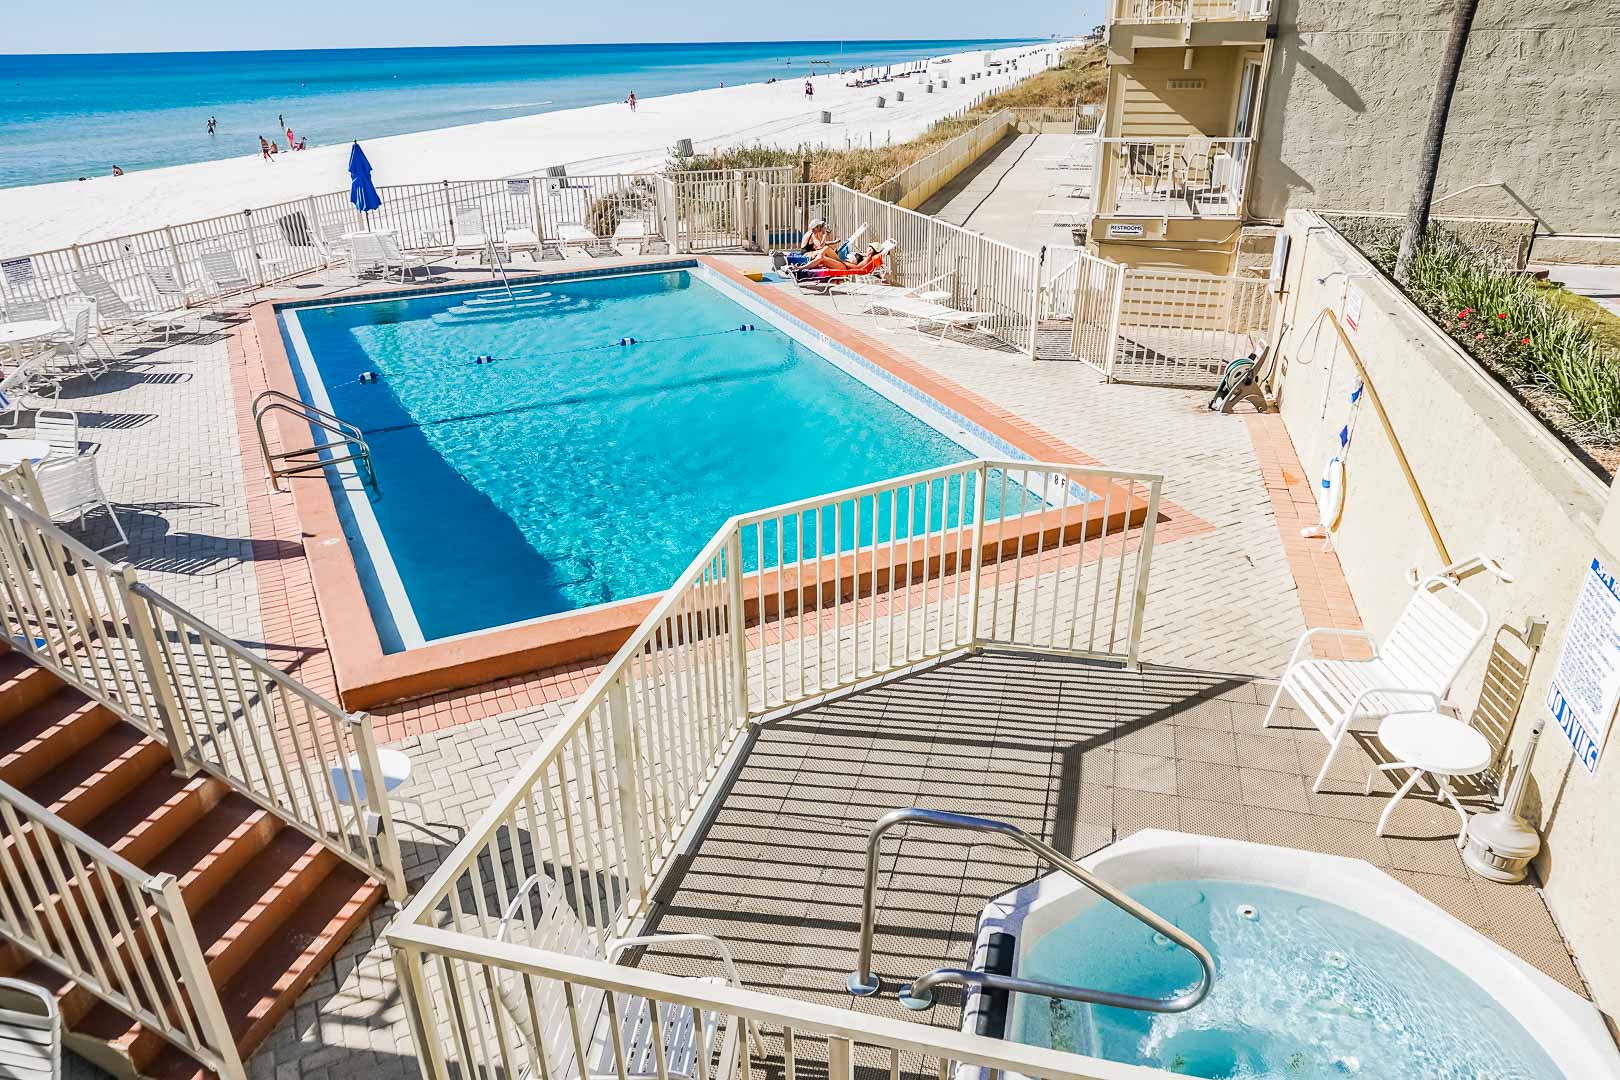 A crisp pool at VRI's Panama City Resort & Club in Florida.